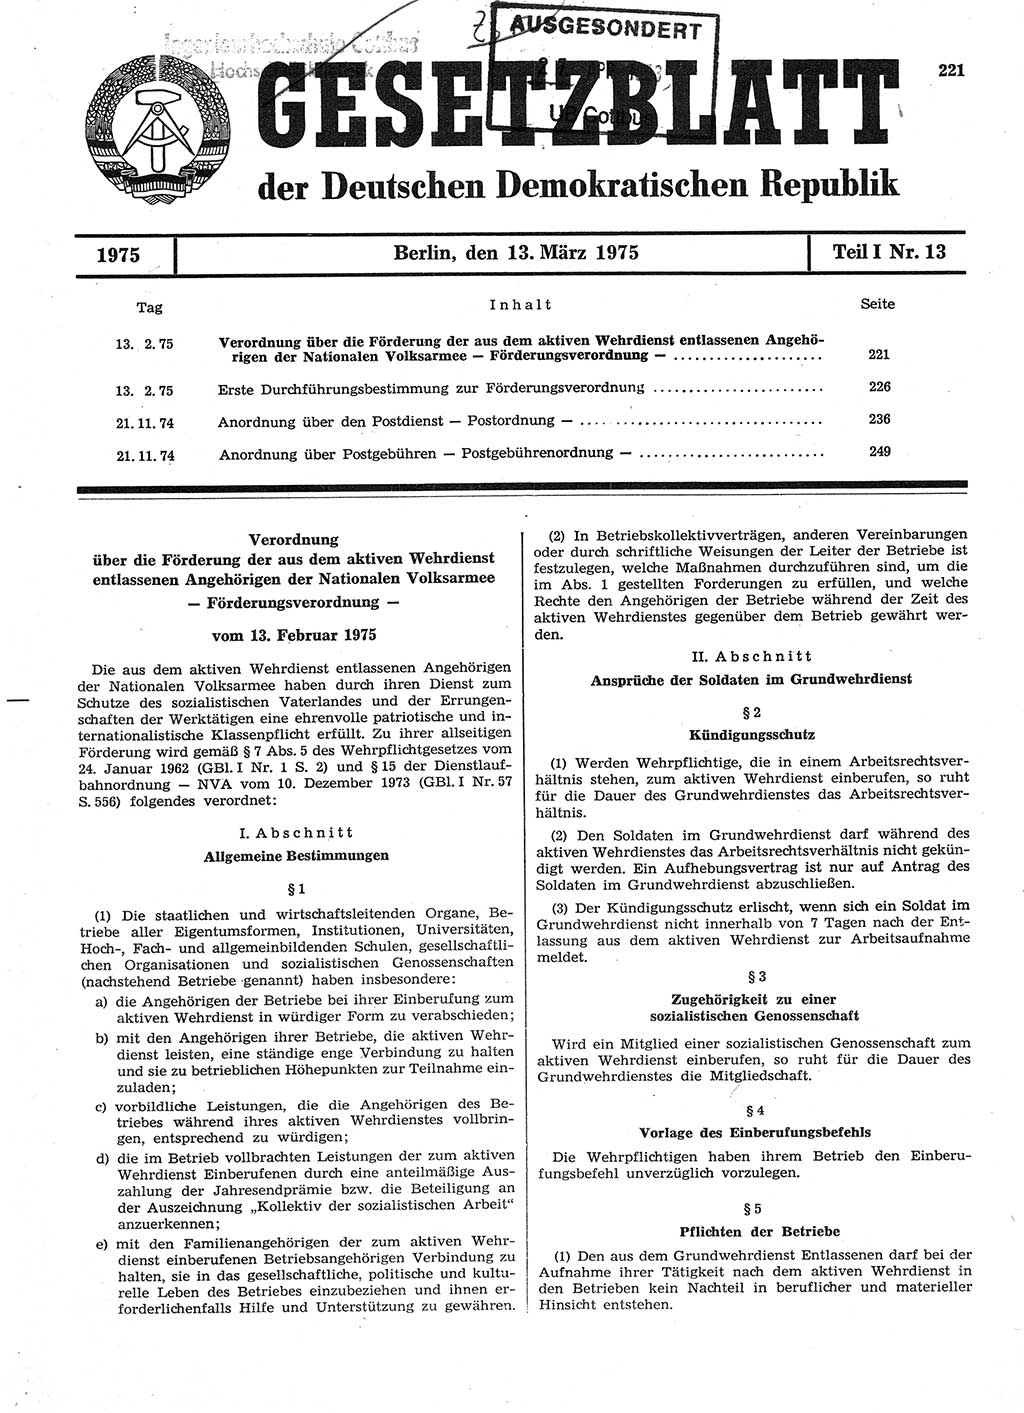 Gesetzblatt (GBl.) der Deutschen Demokratischen Republik (DDR) Teil Ⅰ 1975, Seite 221 (GBl. DDR Ⅰ 1975, S. 221)